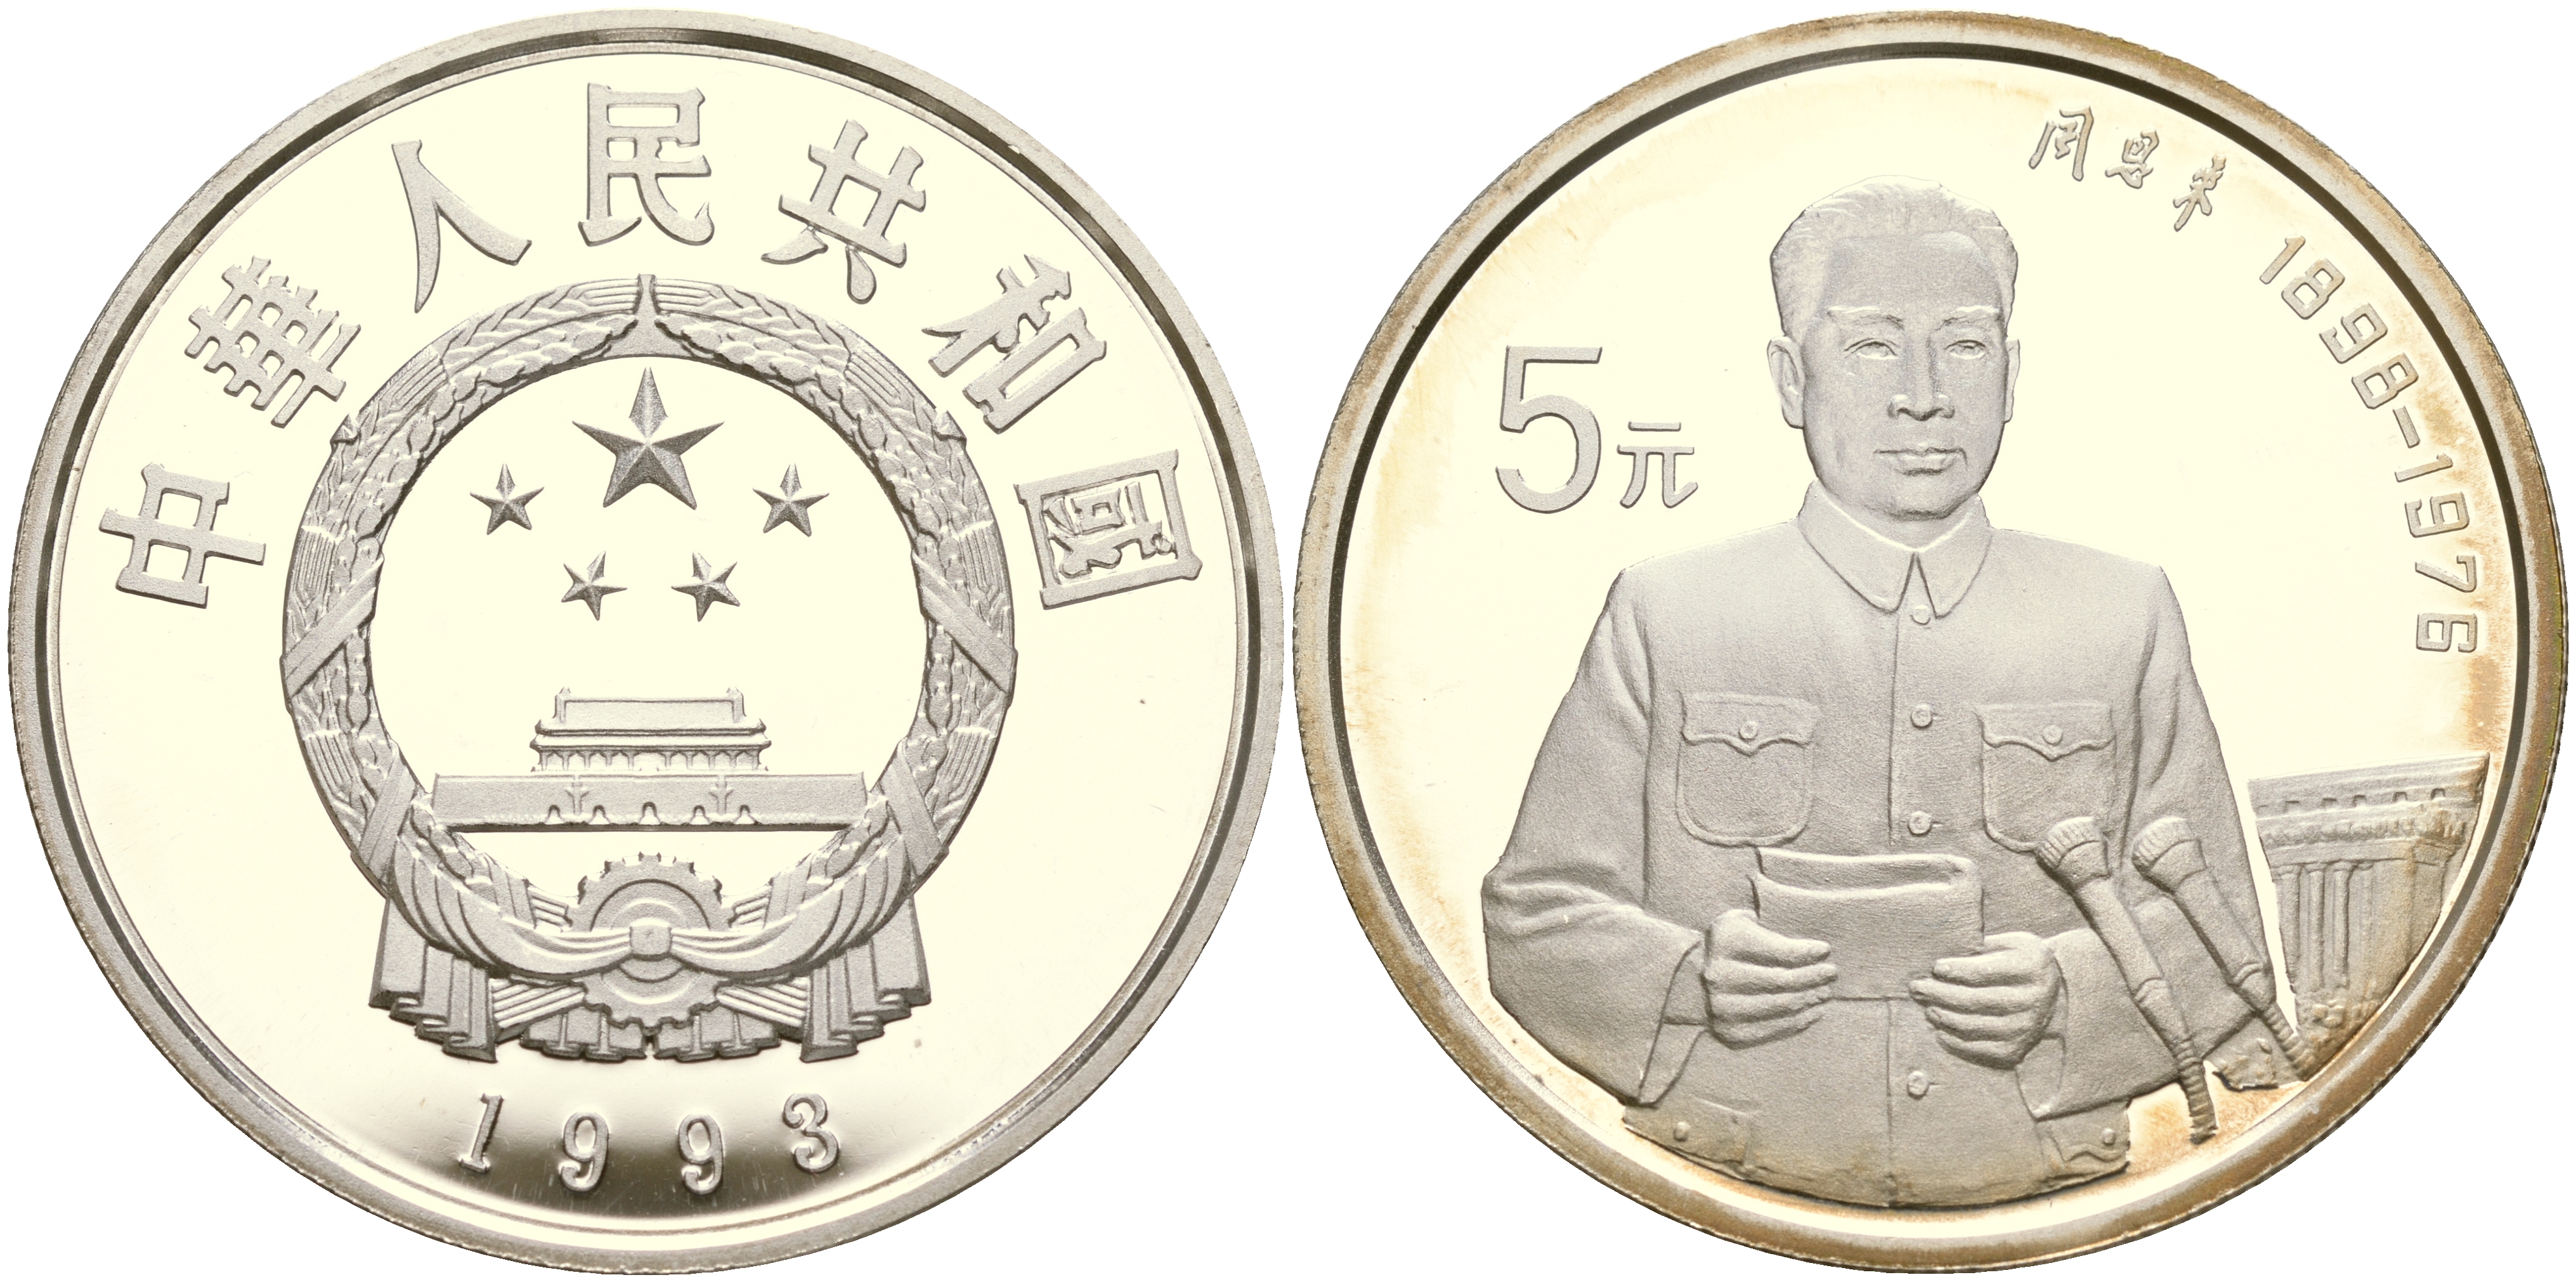 Марко поло монета. 5 Юаней монета. Монетный двор Китая. Полая монета.